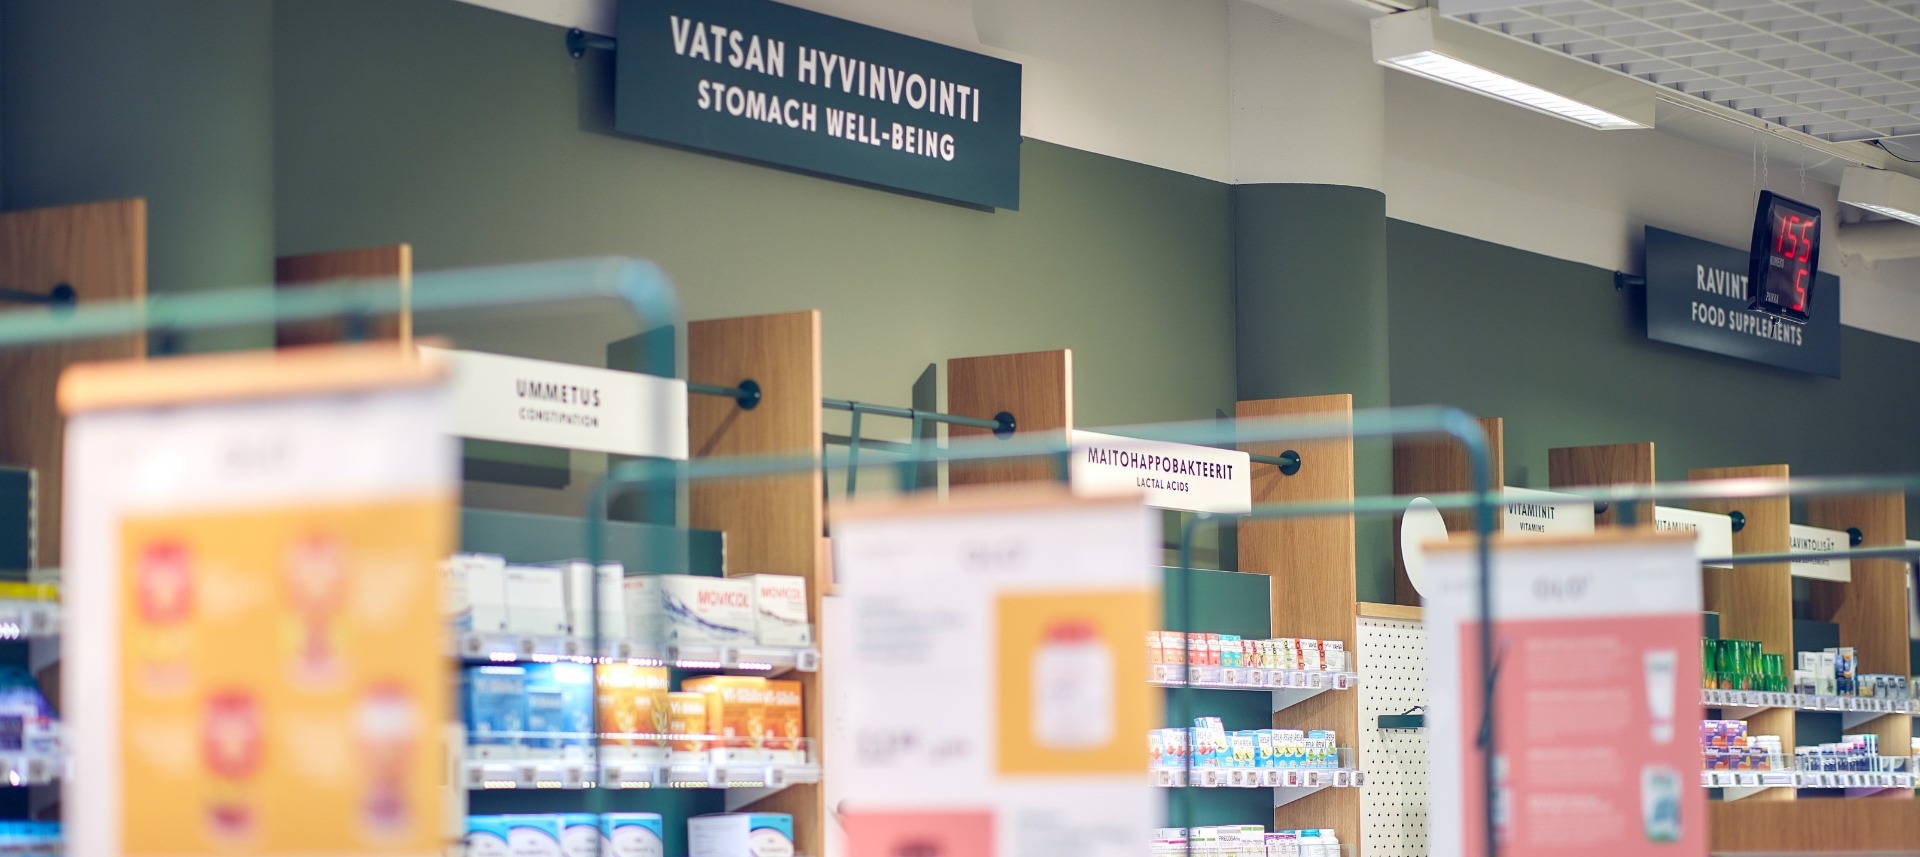 Bothnia apteekki liittyy Olo-apteekkiketjuun: Uusia apteekkipalveluita Pietarsaareen ja Pännäisiin 